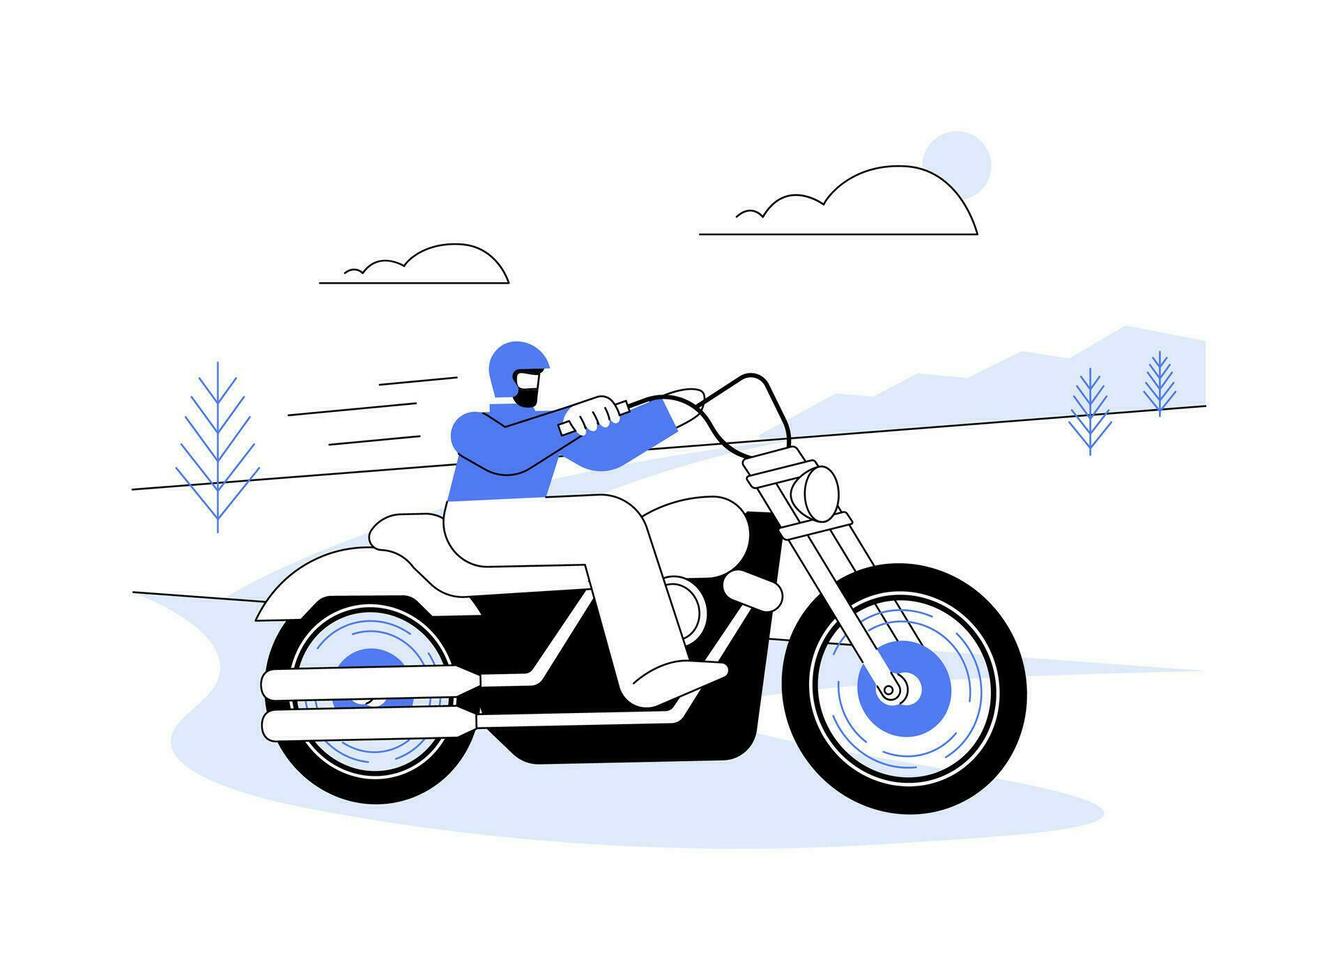 körning motorväg på motorcykel abstrakt begrepp vektor illustration.